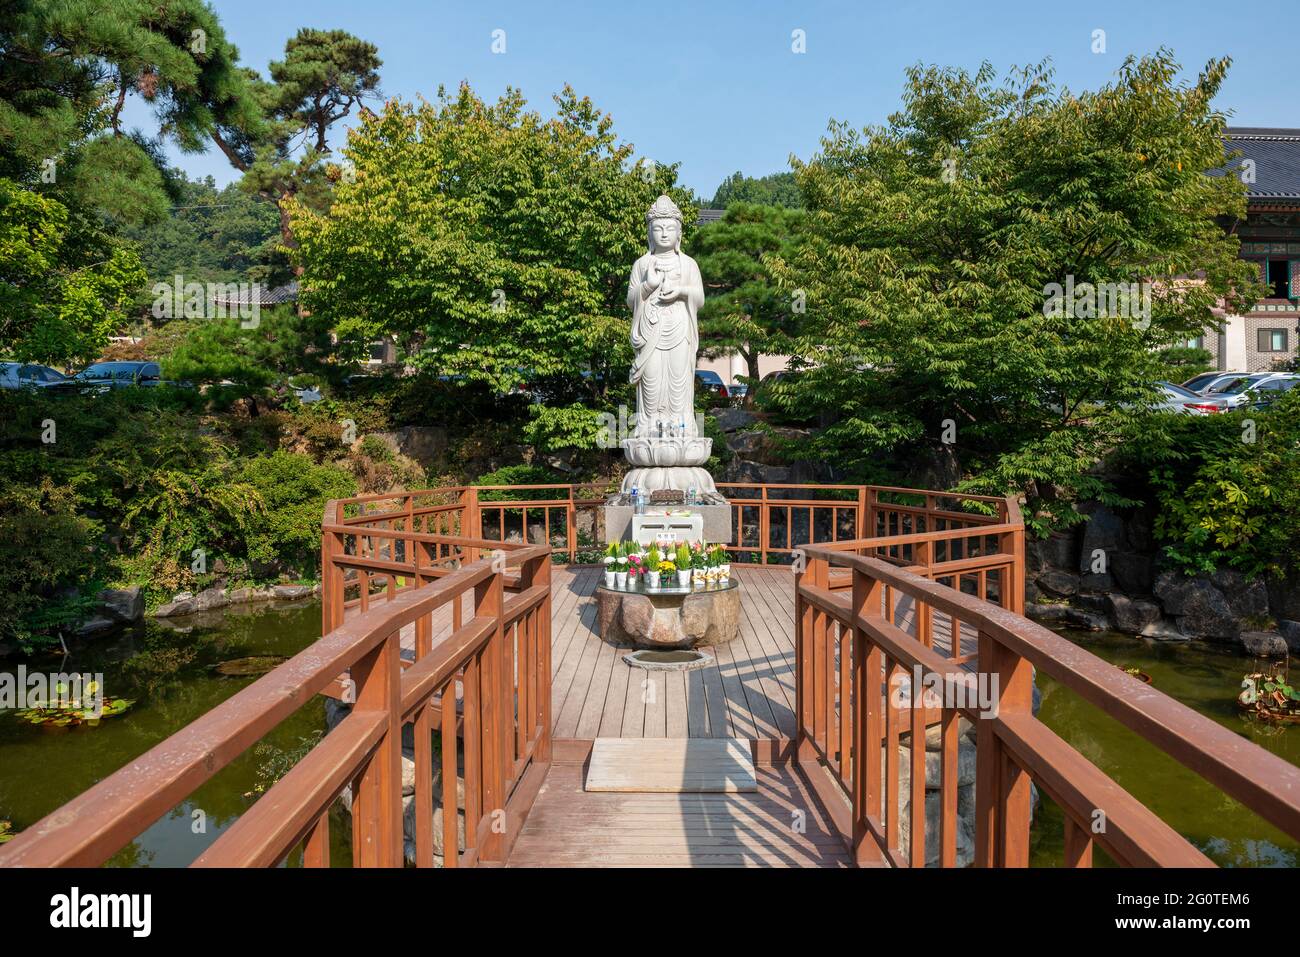 Statue en pierre de Avalokiteśvara au temple de Bongeunsa dans le quartier de Gangnam, Séoul. Corée du Sud Banque D'Images